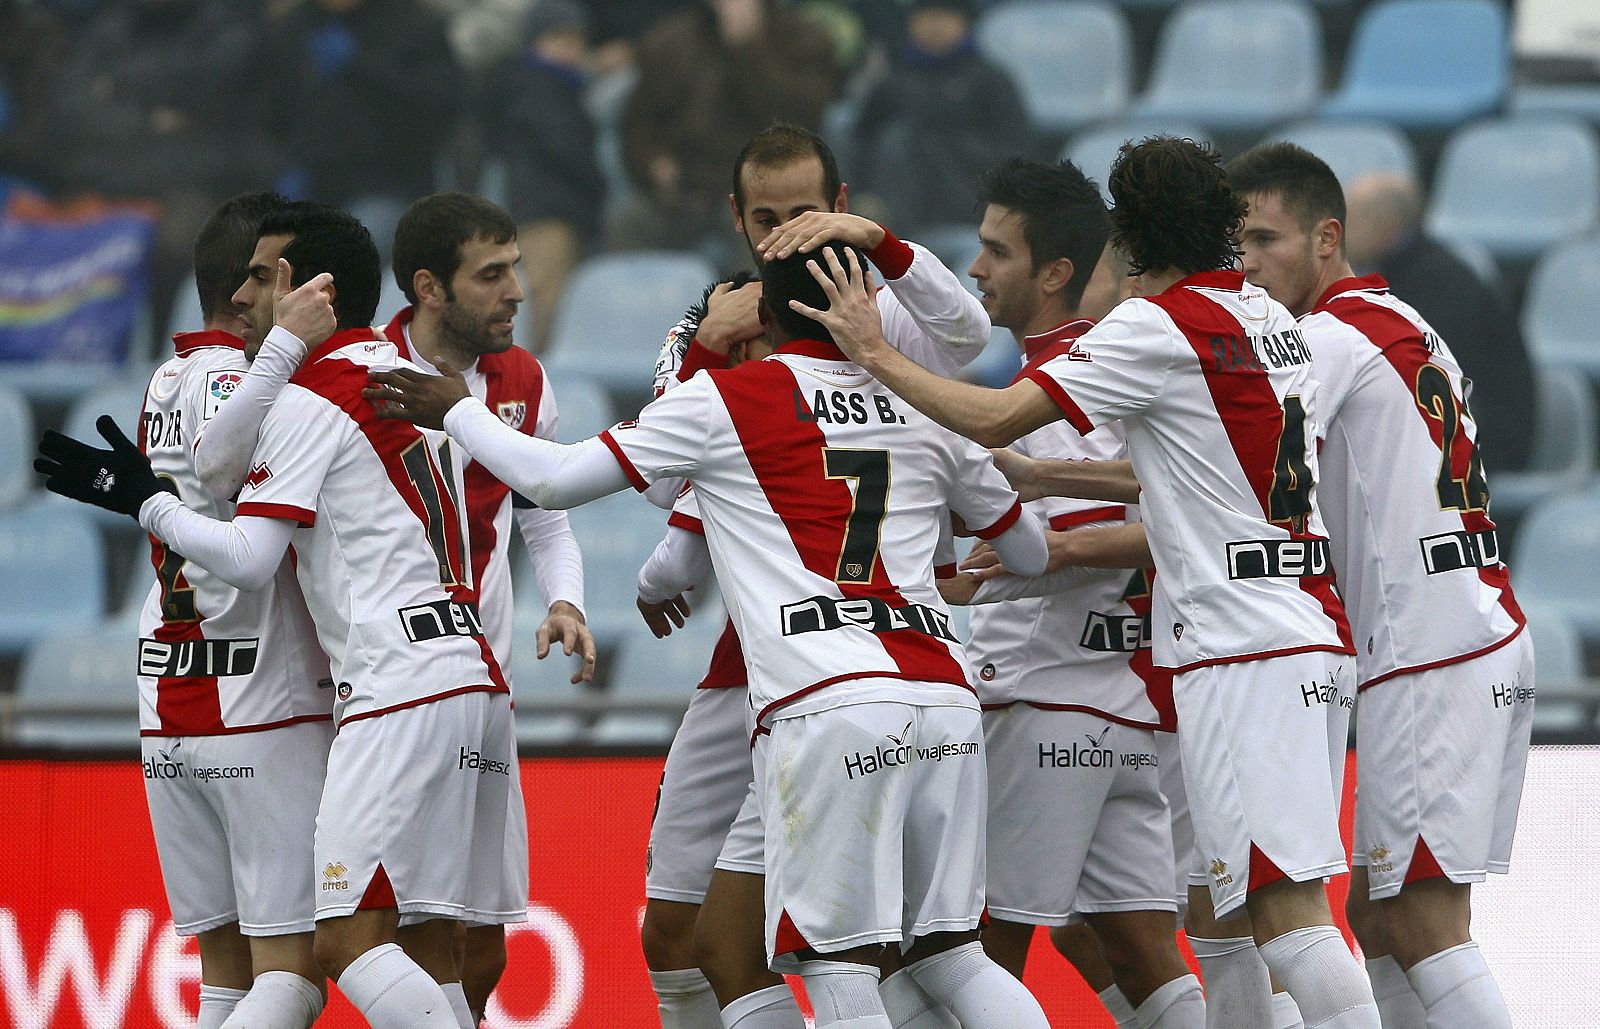 Los jugadores del Rayo Vallecano celebran un gol de Bueno frente al Getafe